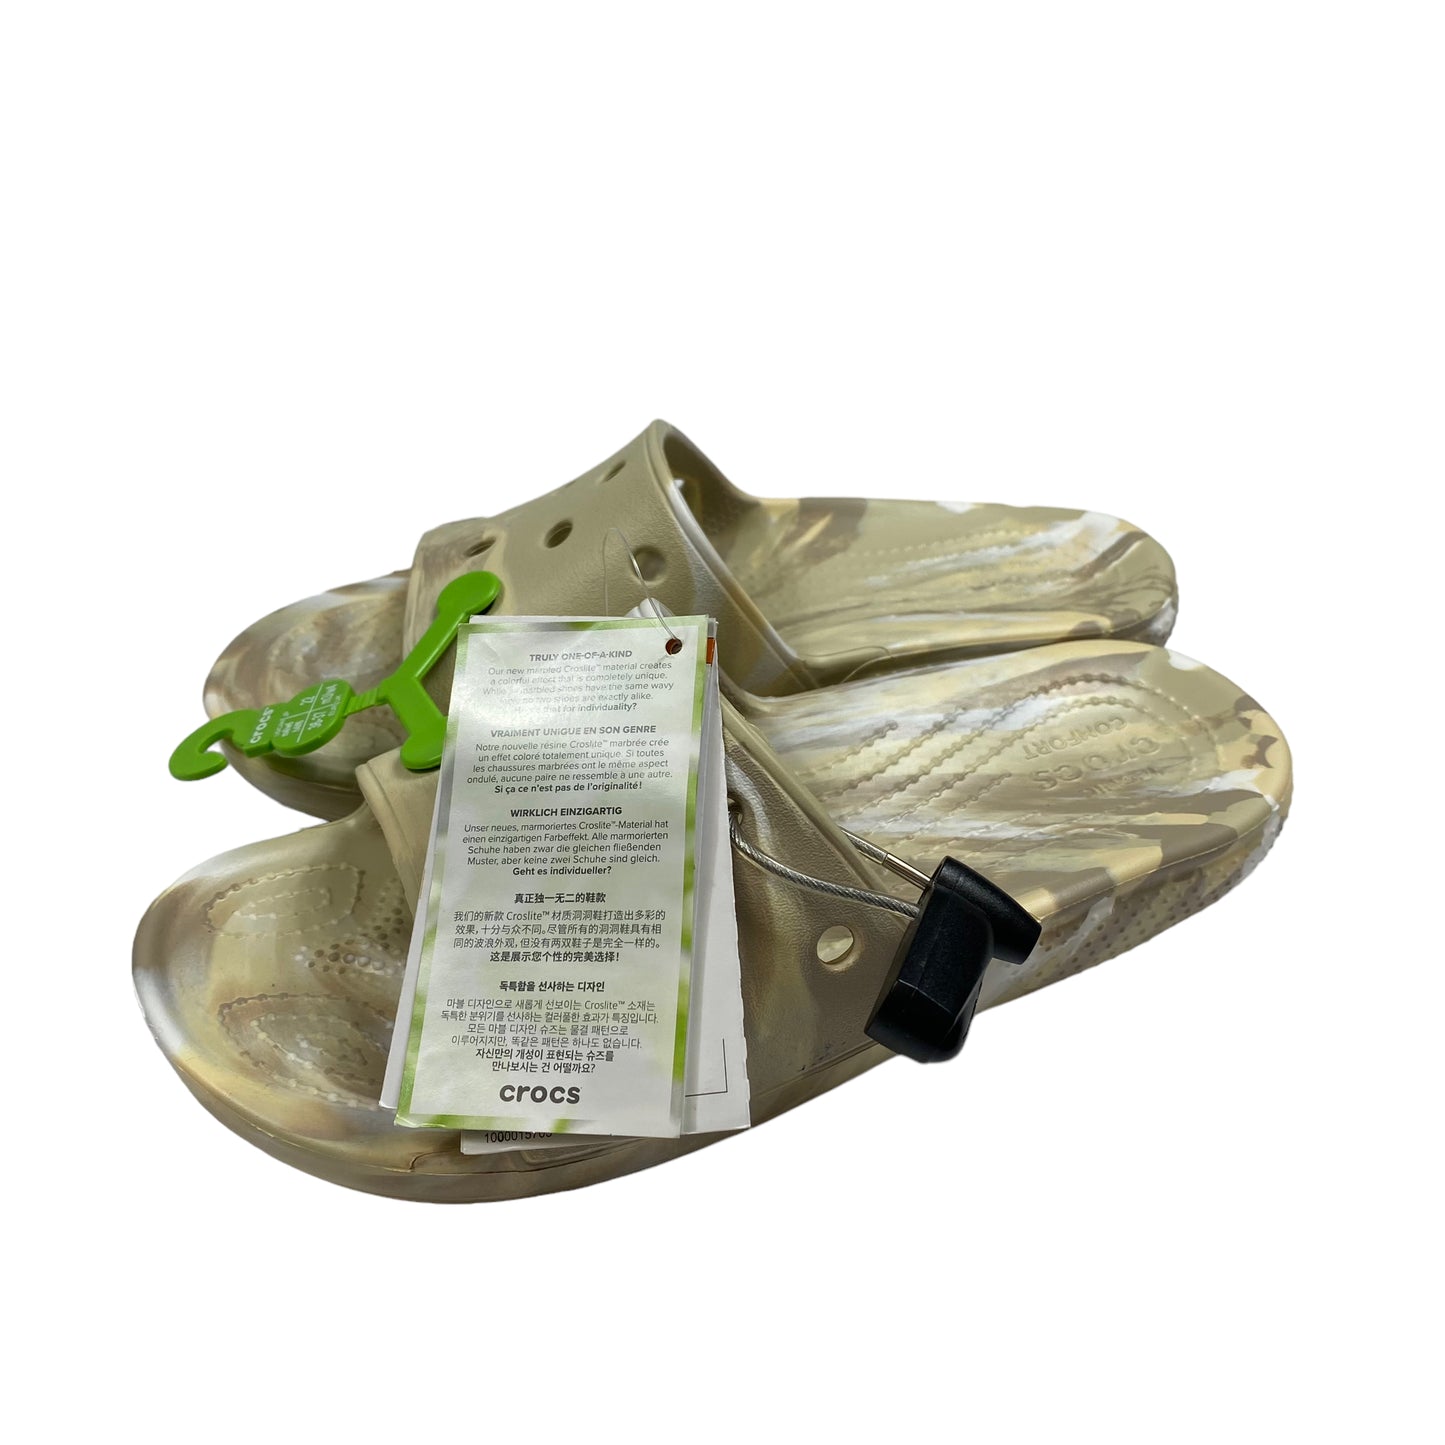 Sandals Flats By Crocs  Size: 6